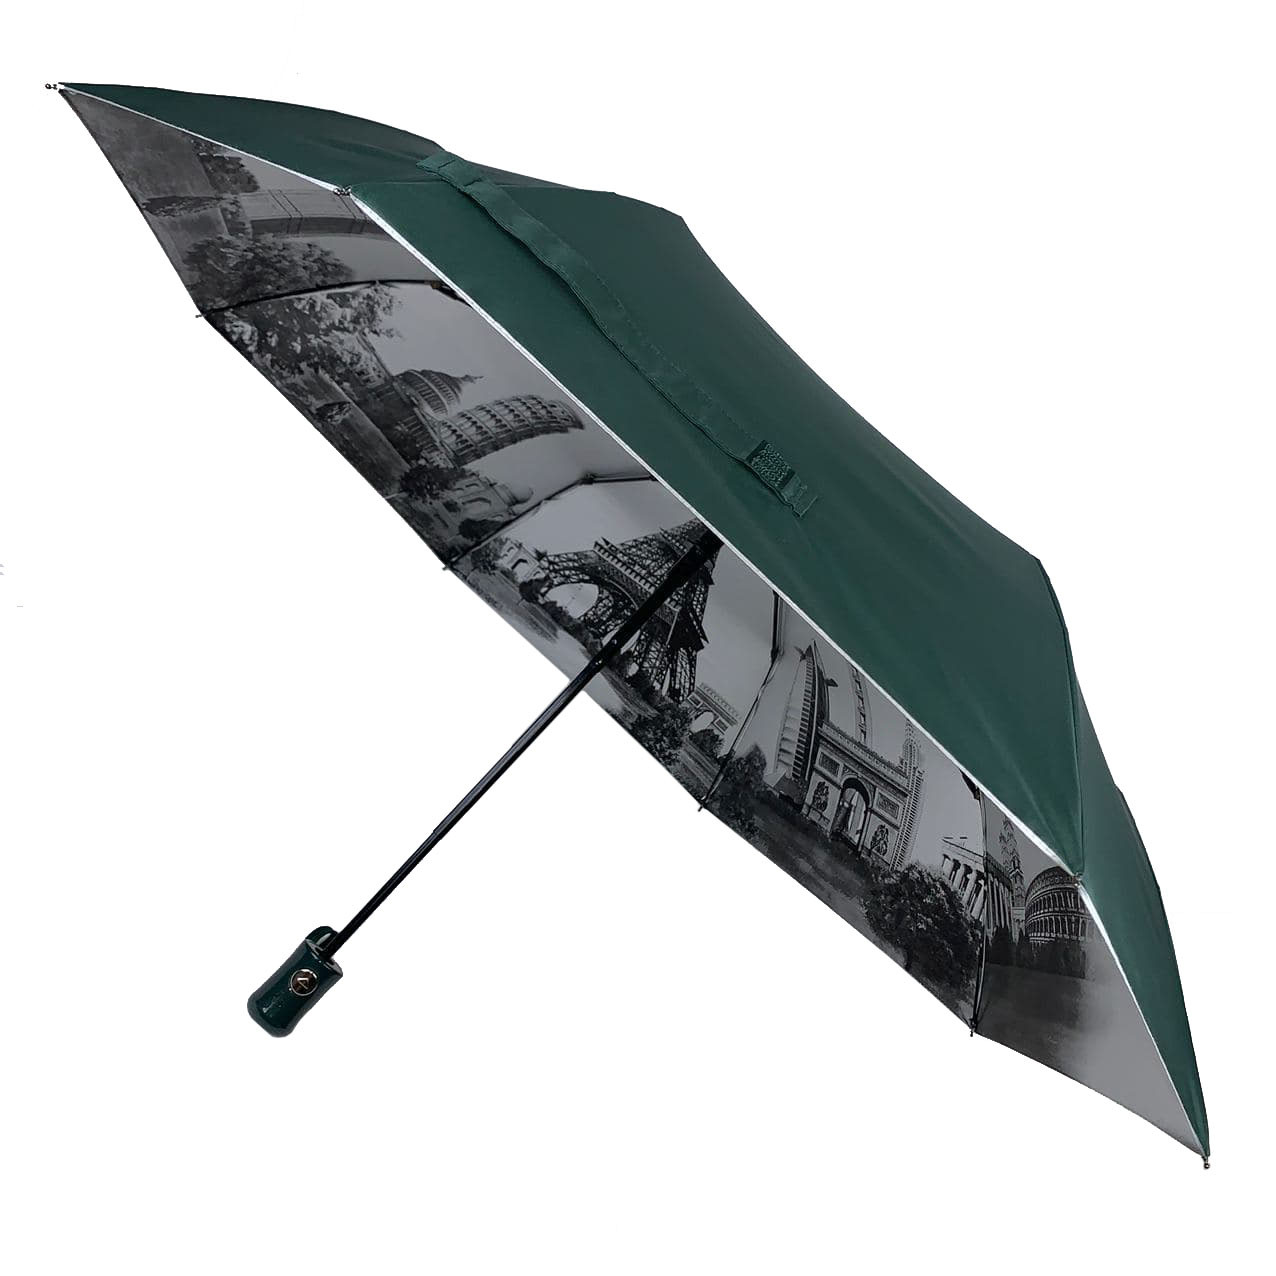 Жіноча парасоля напівавтом Toprain з орнаментом зсередини і тефлоновою пропочинкою, темно-зелений, 0480-3, фото 1